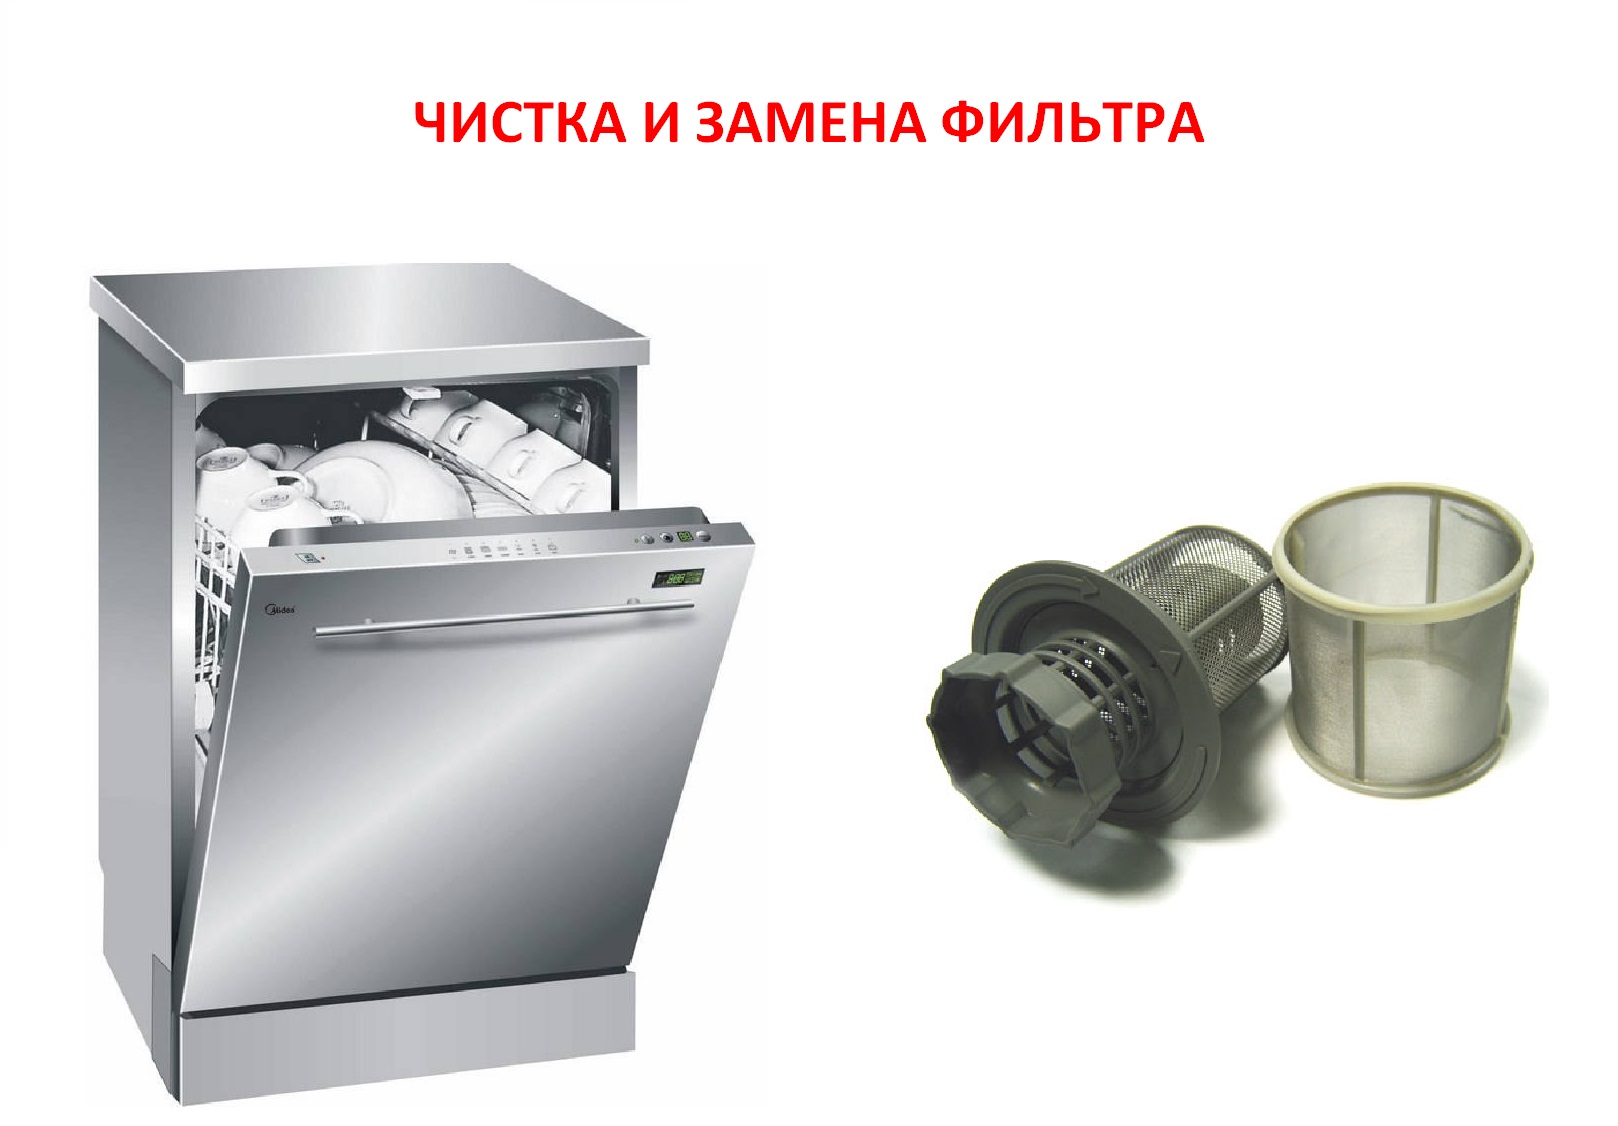 Filter der Geschirrspülmaschine auswechseln und reinigen